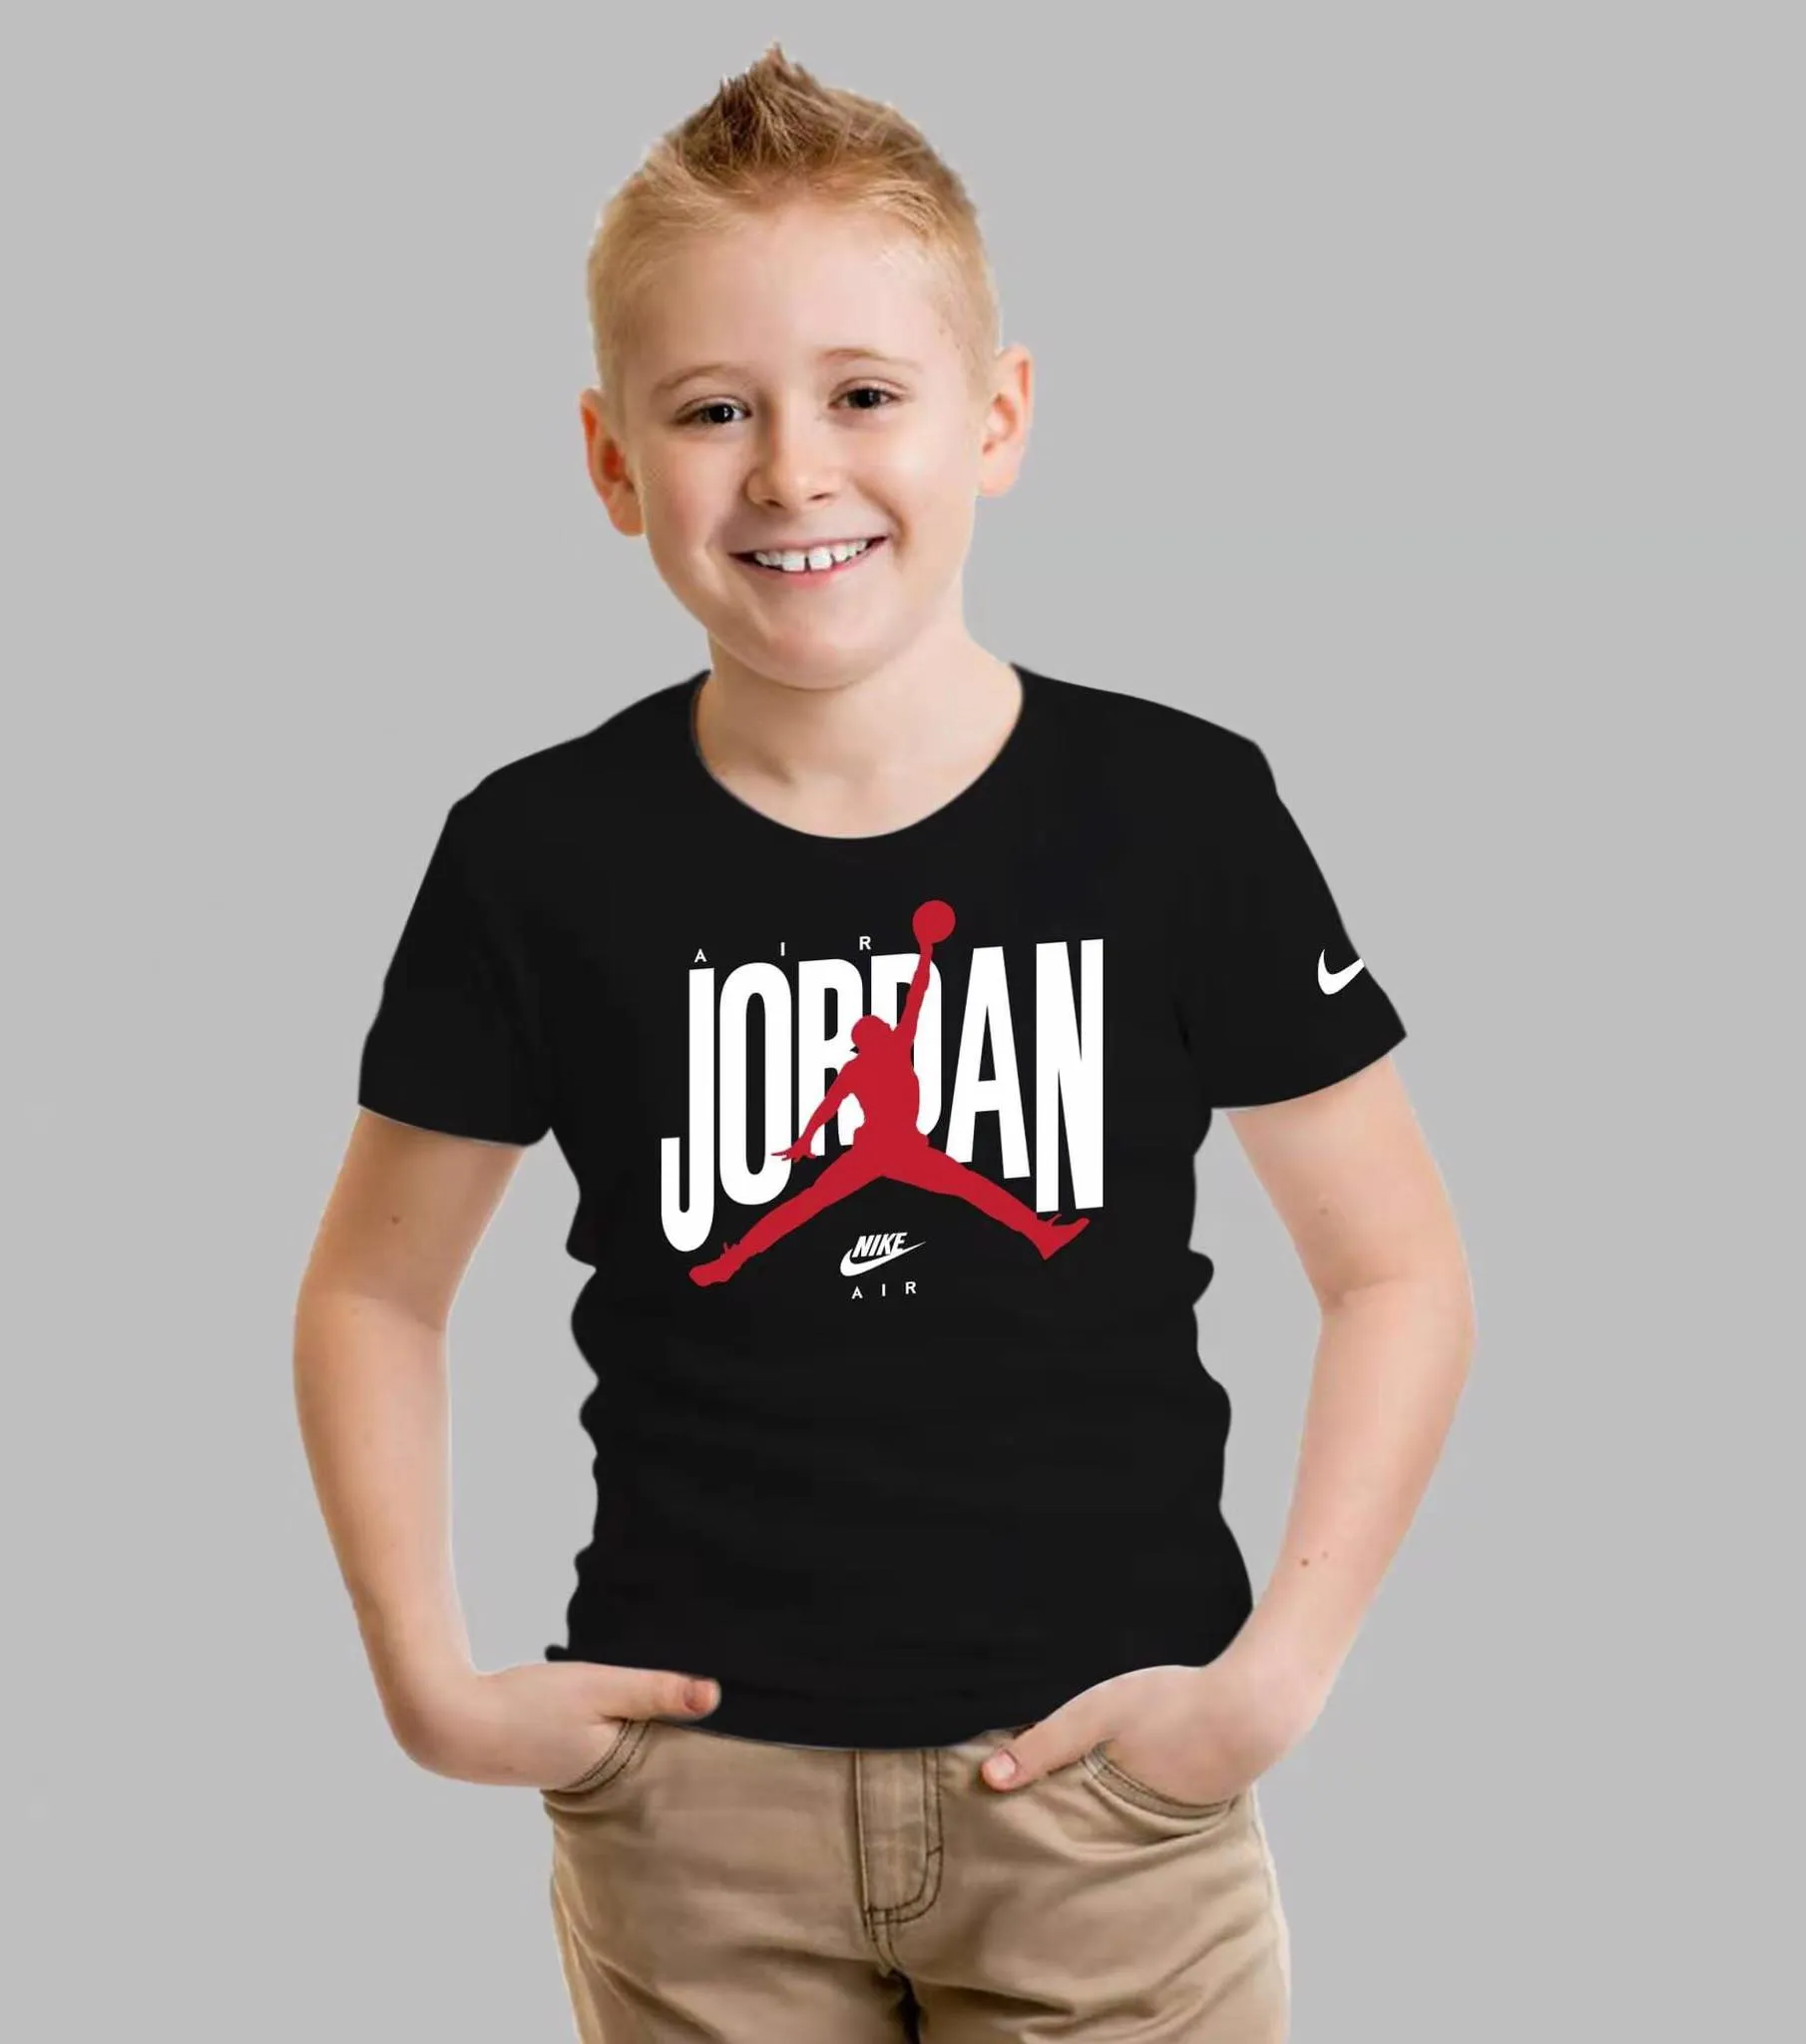 boys jordan t shirt